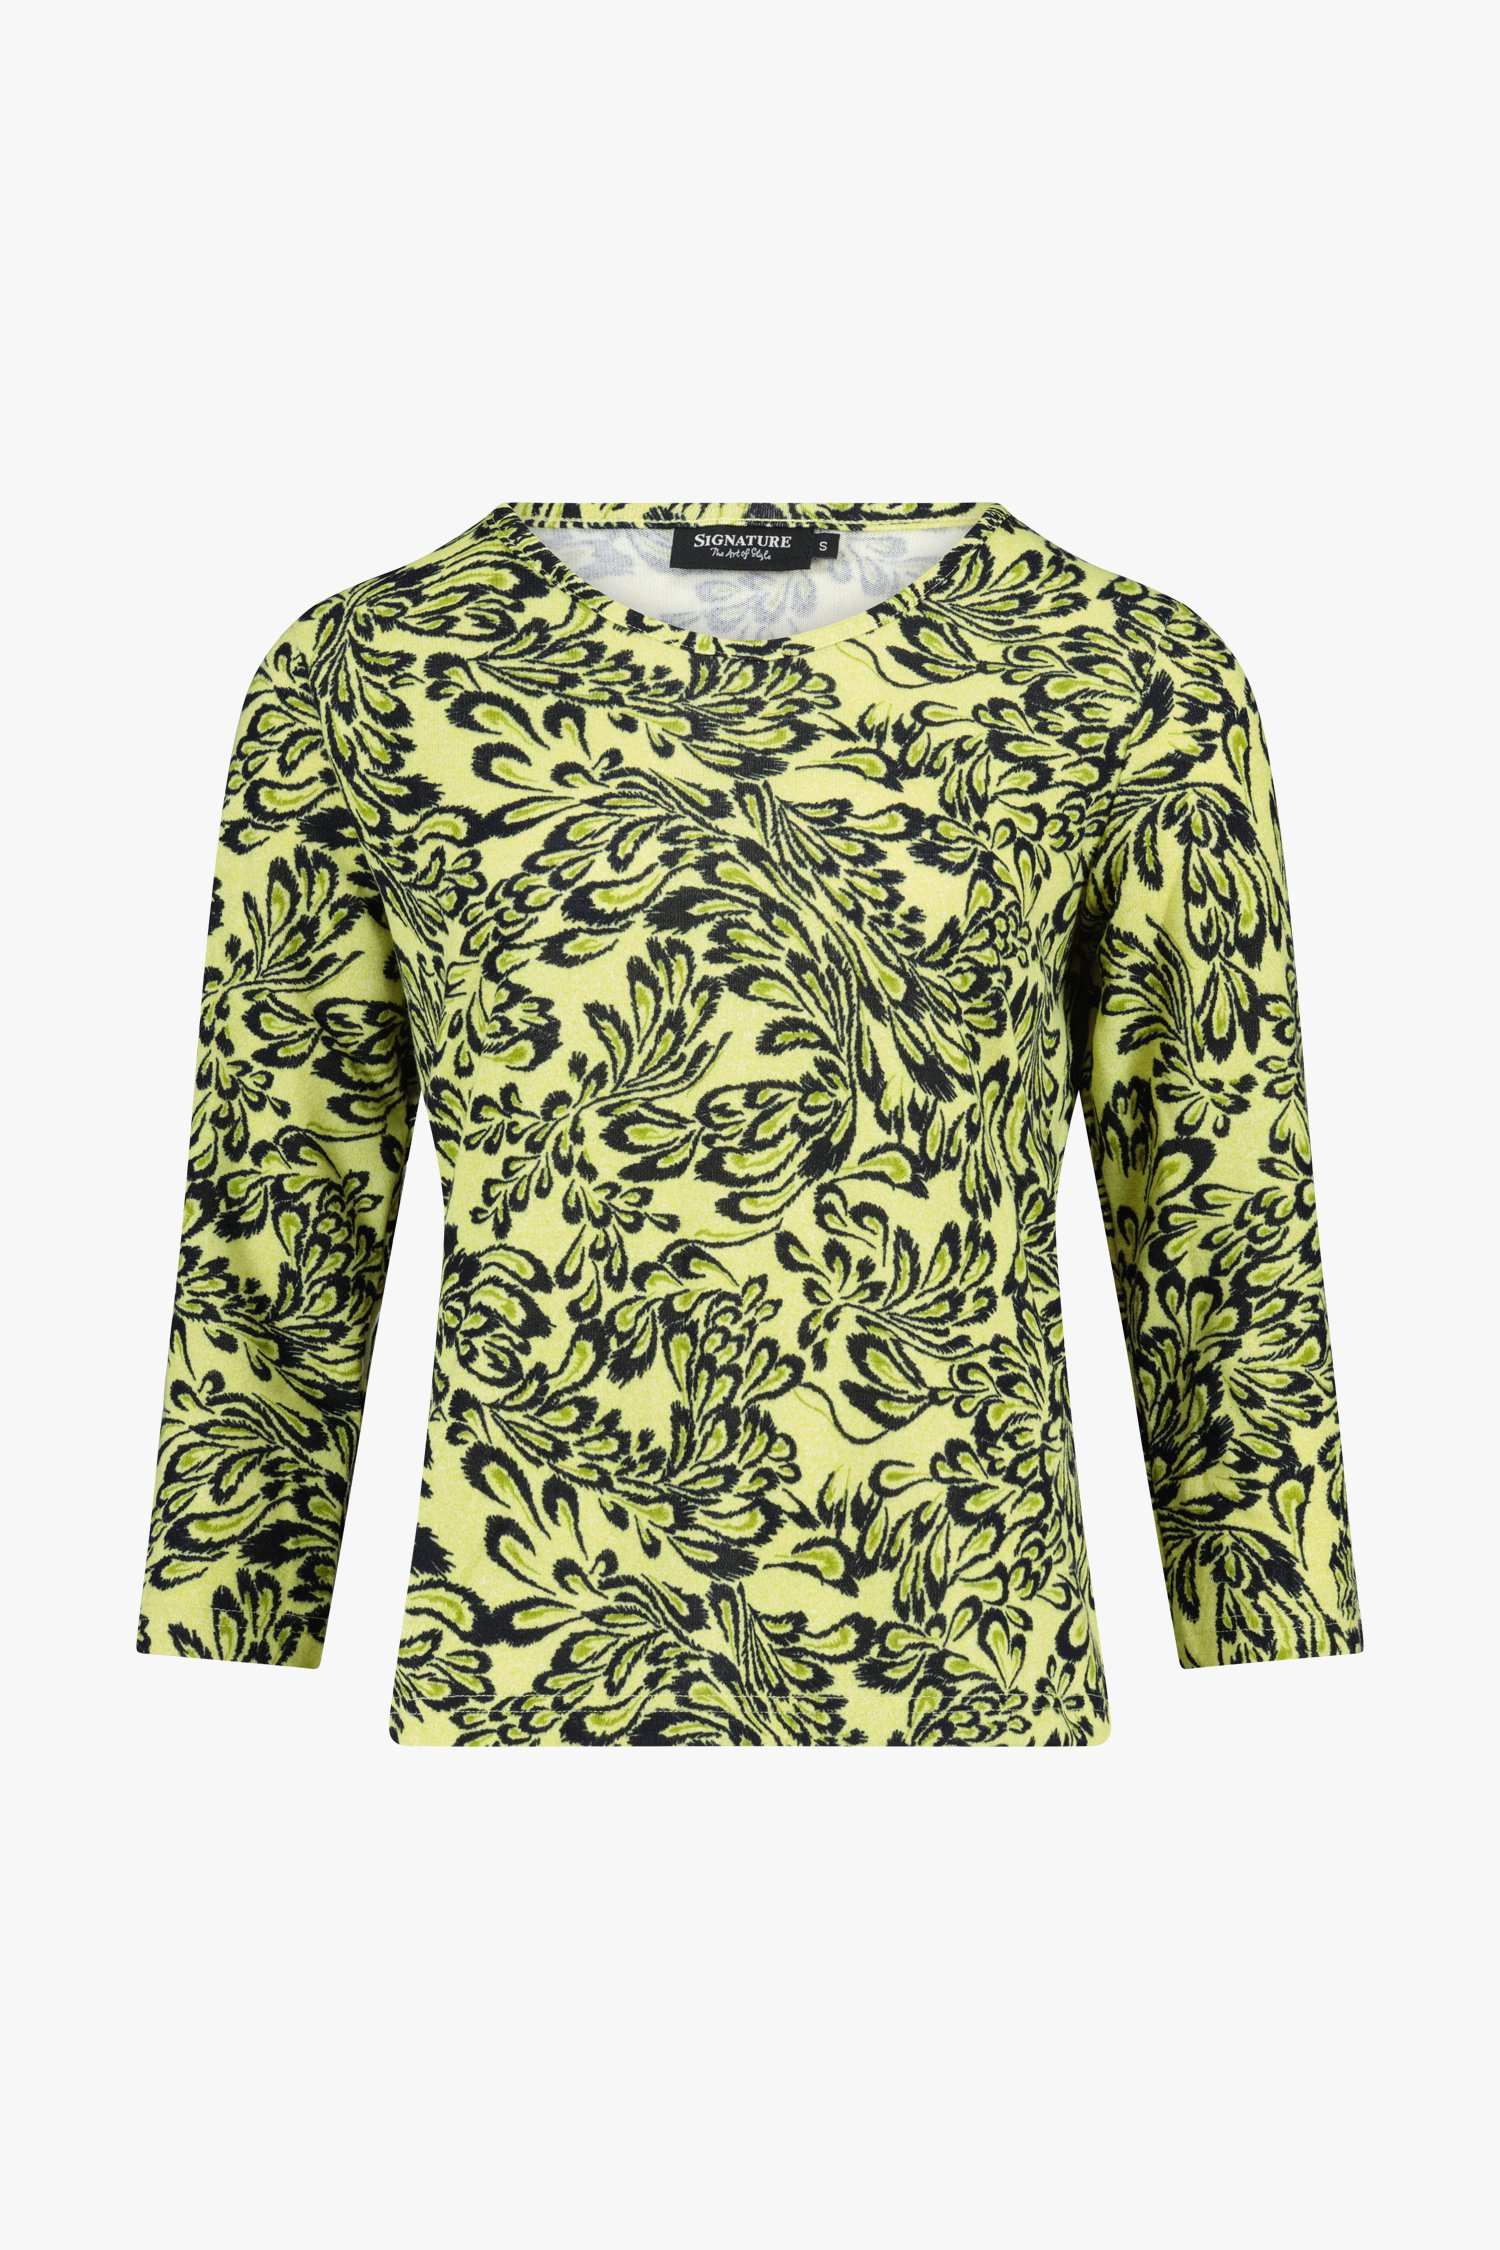 fluit Vernederen Collectief Geel-groen T-shirt met zwarte print van Signature | 9799323 | e5